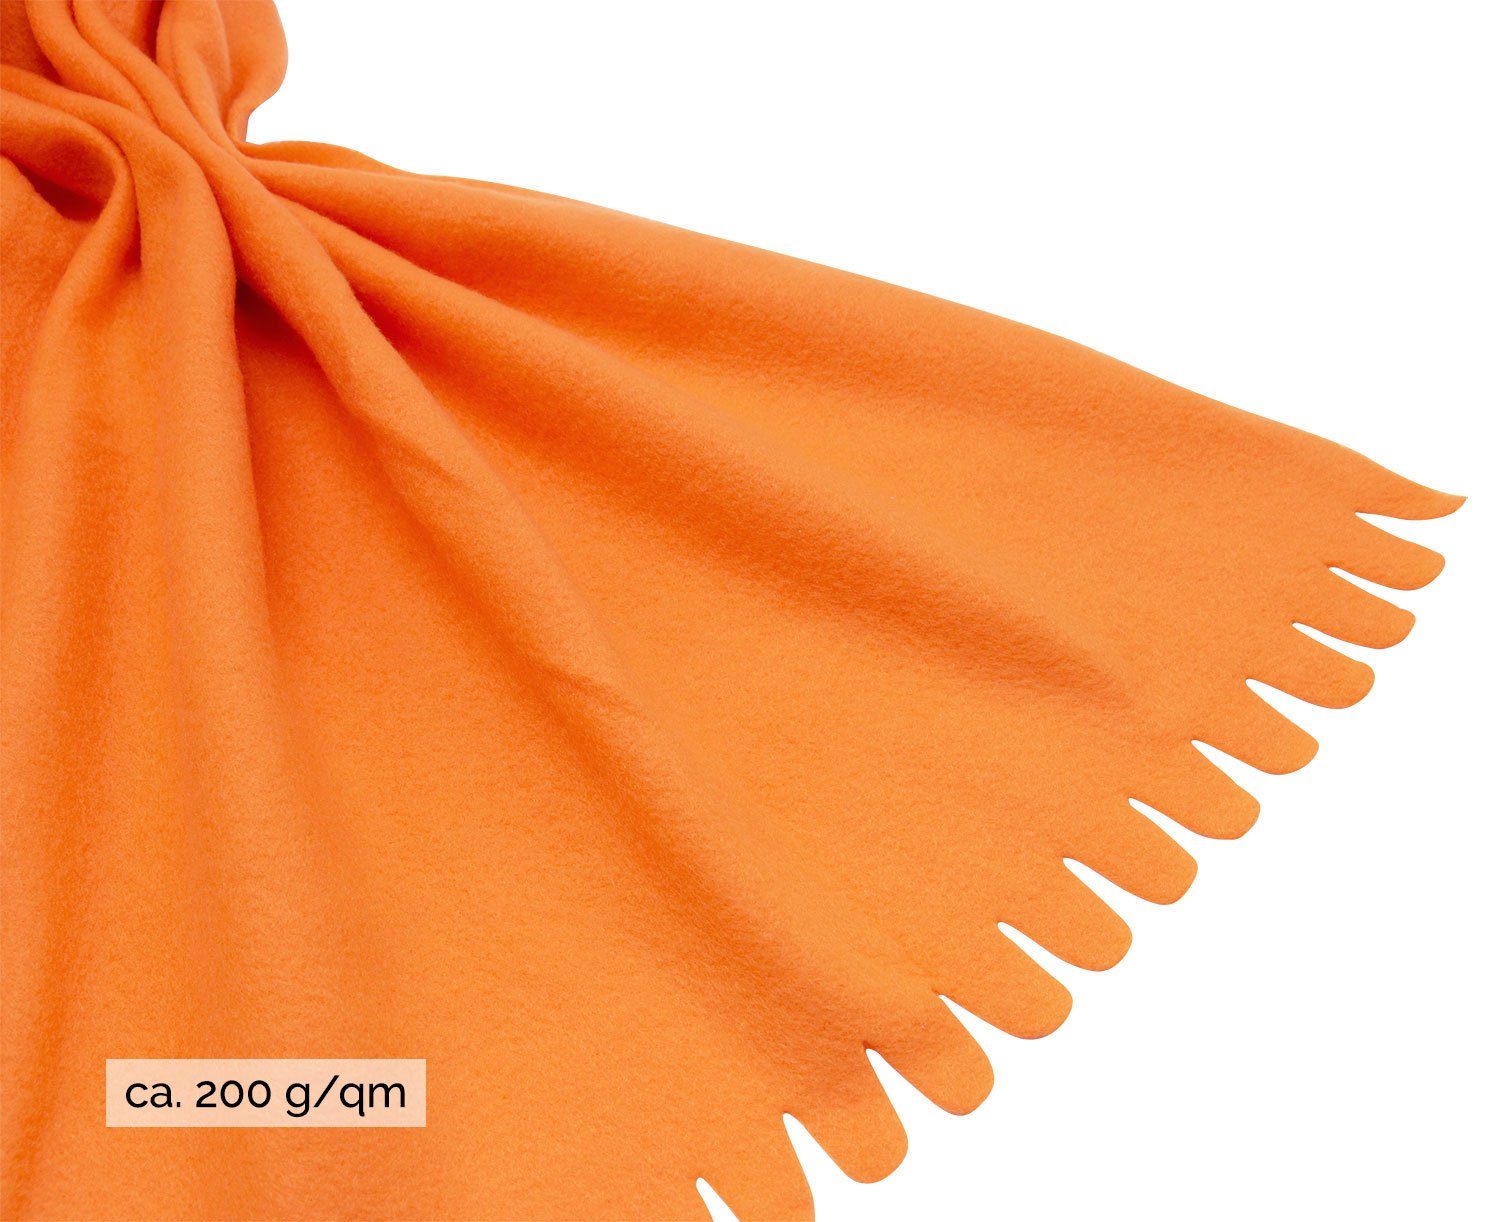 Wohndecke, ZOLLNER, stylische In 130 vielen 100% 170 x Farben cm, verfügbar orange Polyester, Farben vielen verfügbar, Wellenkante, in